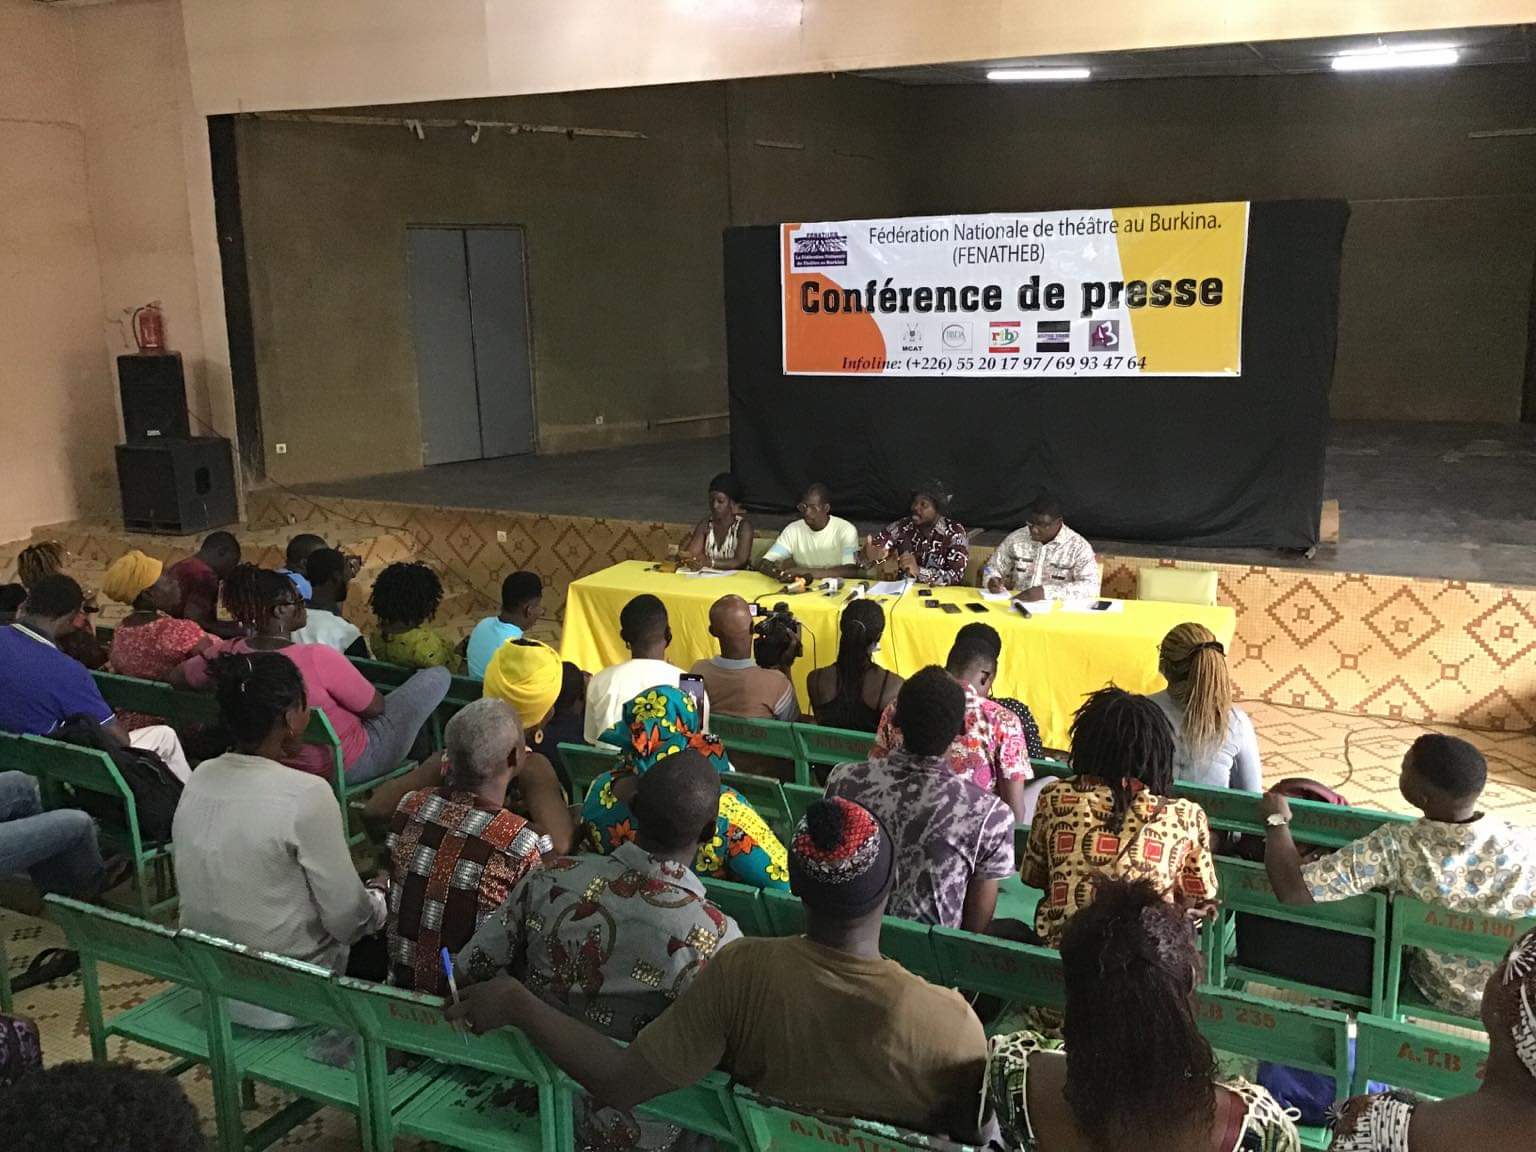  Droits d’auteurs au Burkina : les acteurs du monde du théâtre désormais éligibles